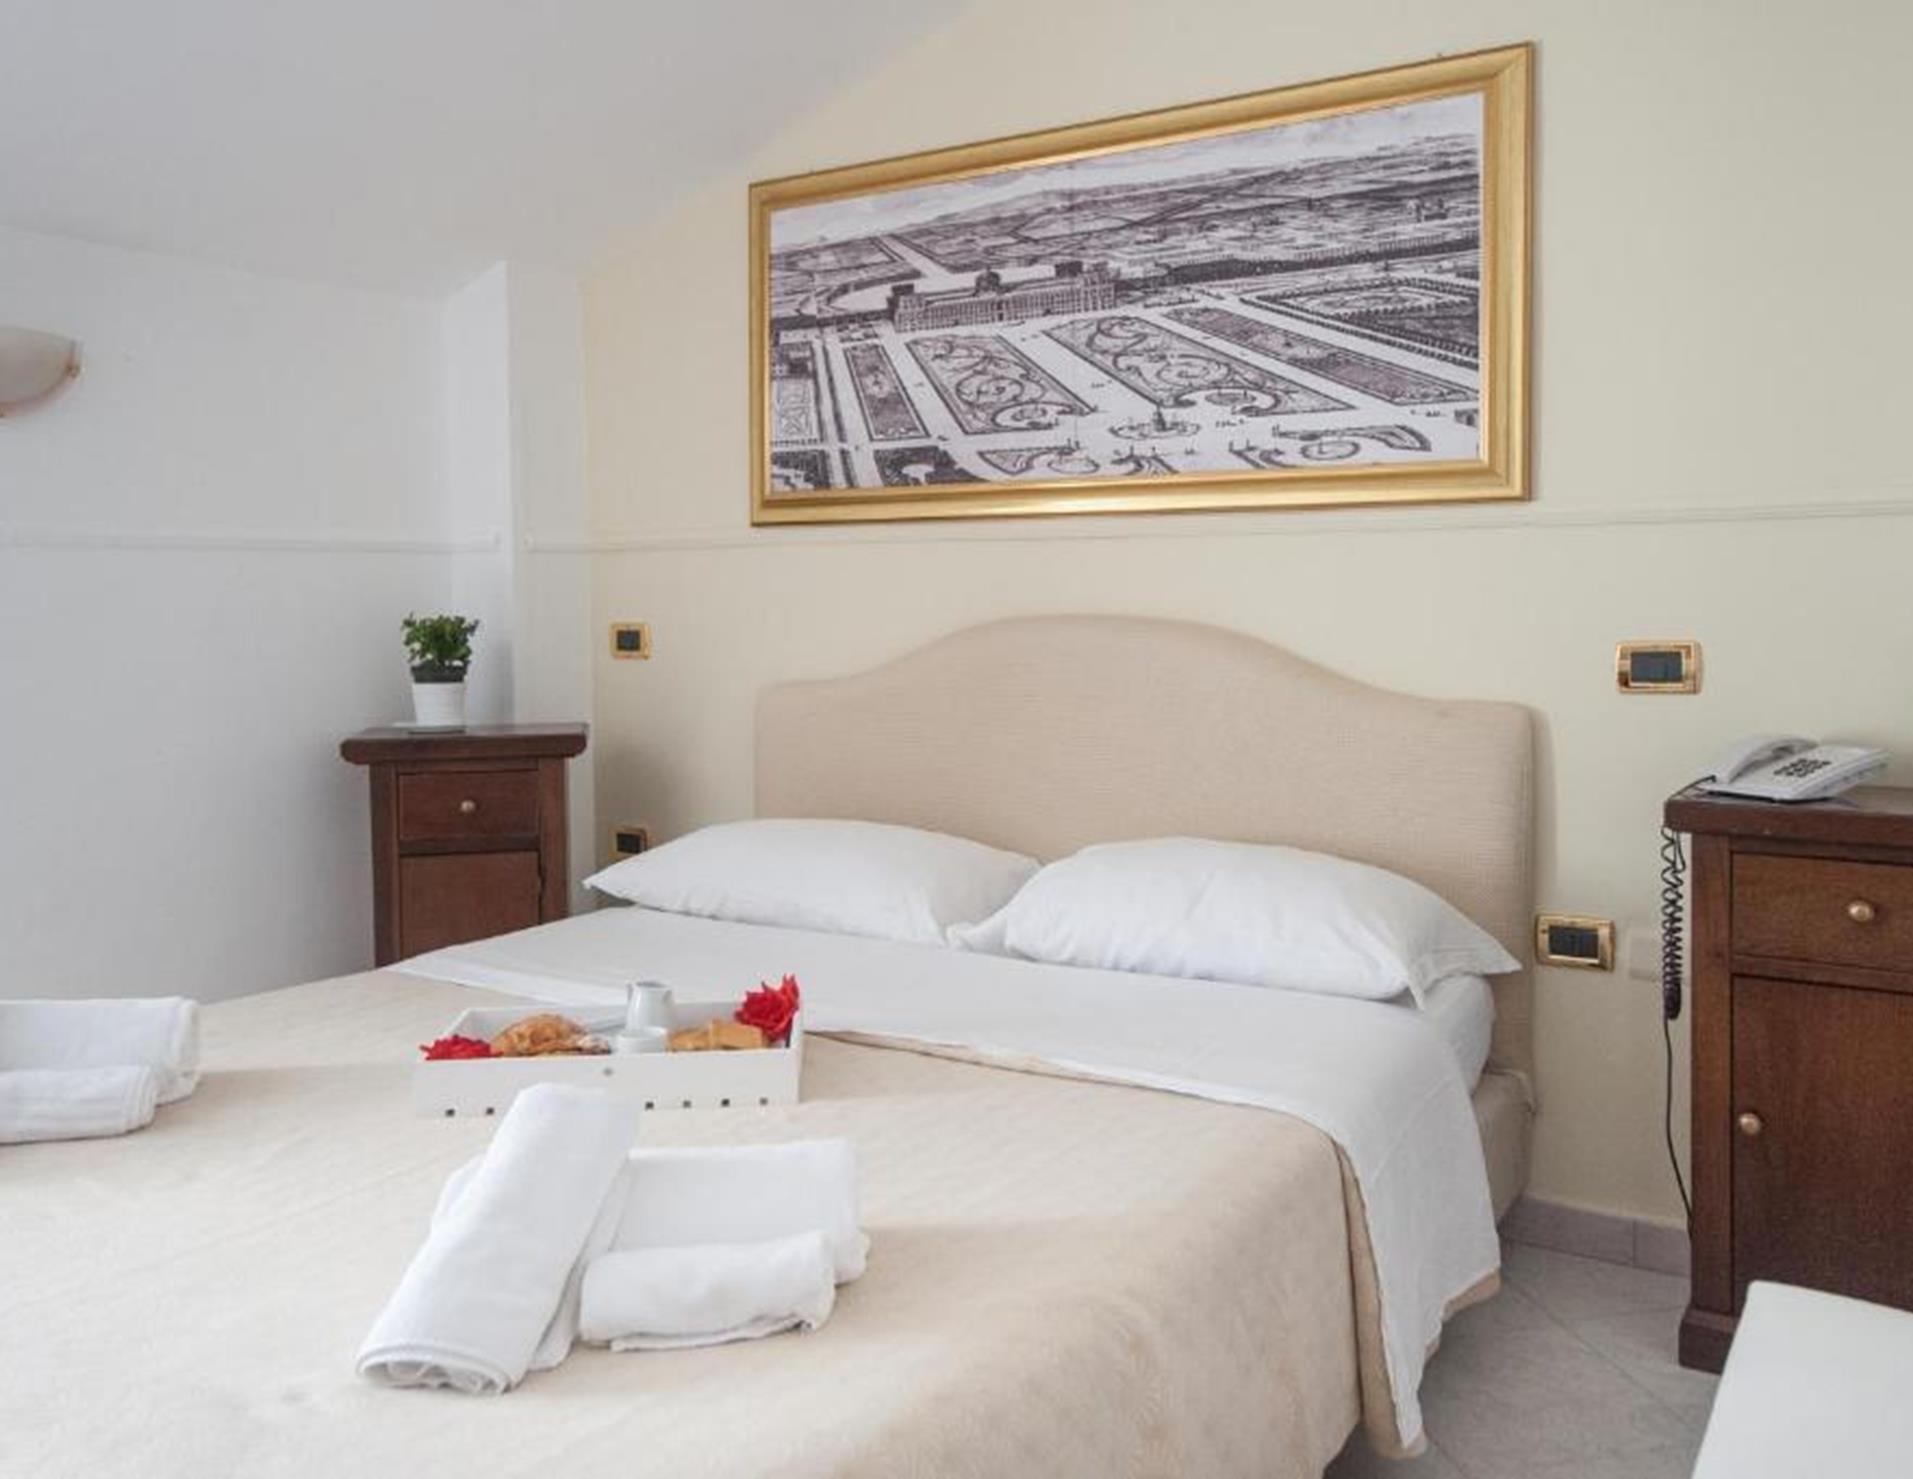 Hotel Caserta Antica - Room 5